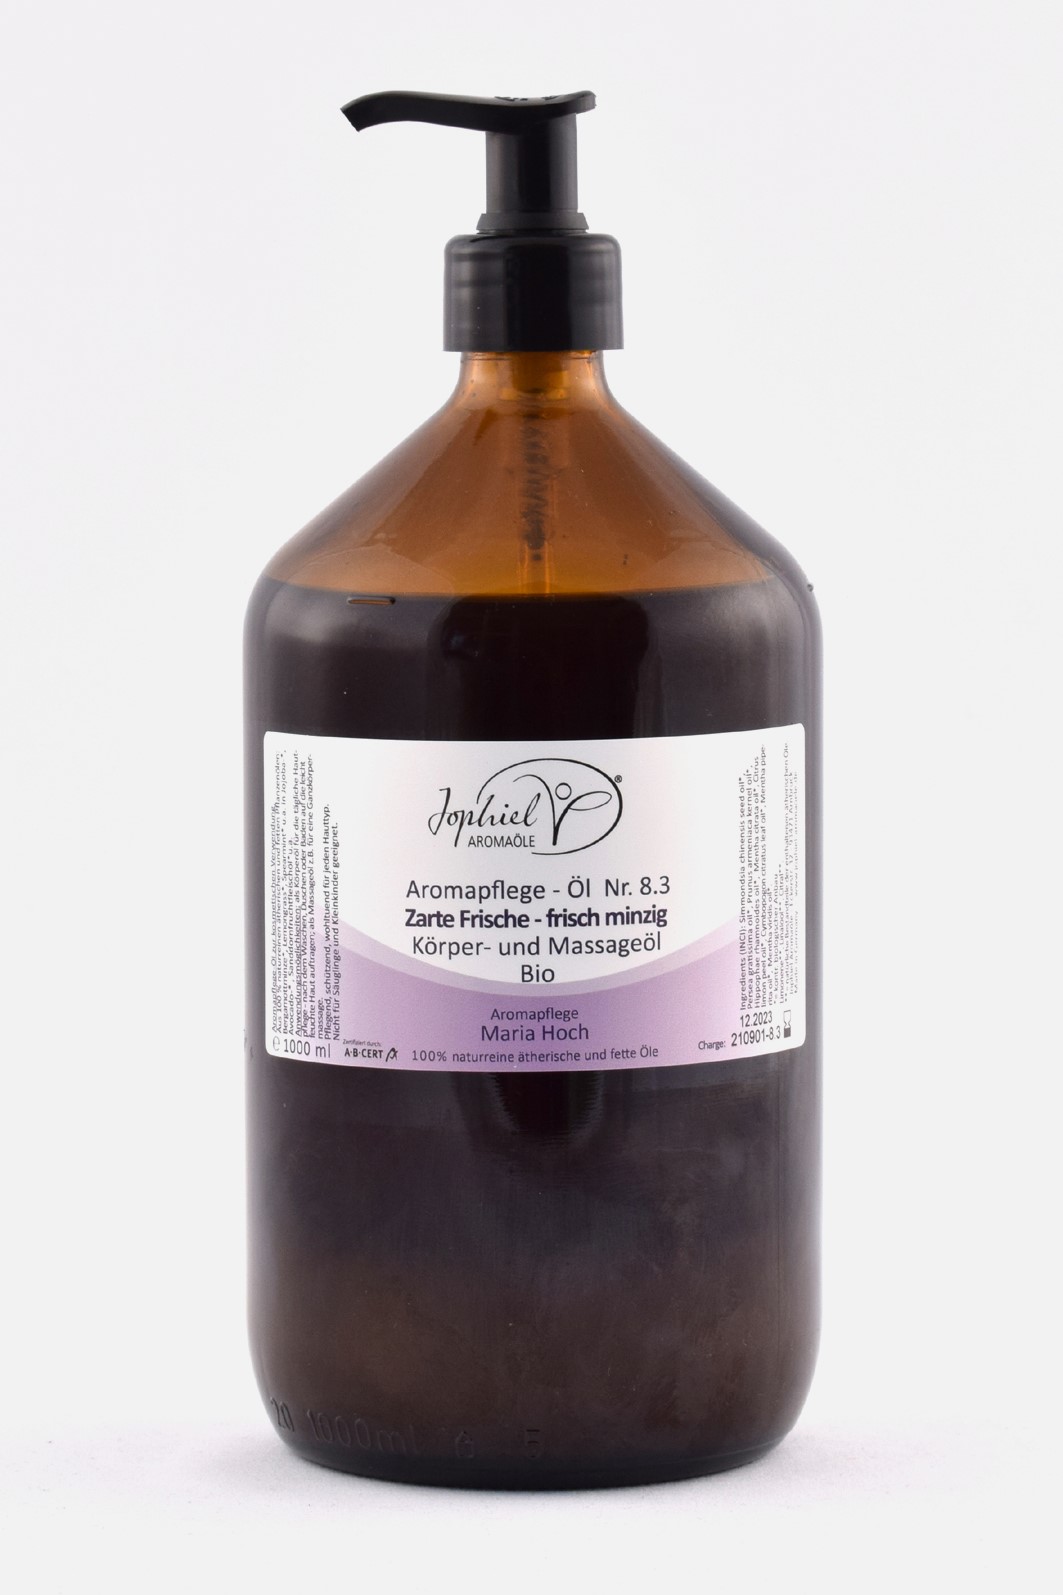 Aromapflege-Öl Nr. 08.3 Zarte Frische Körper- und Massageöle Bio 1000 ml 